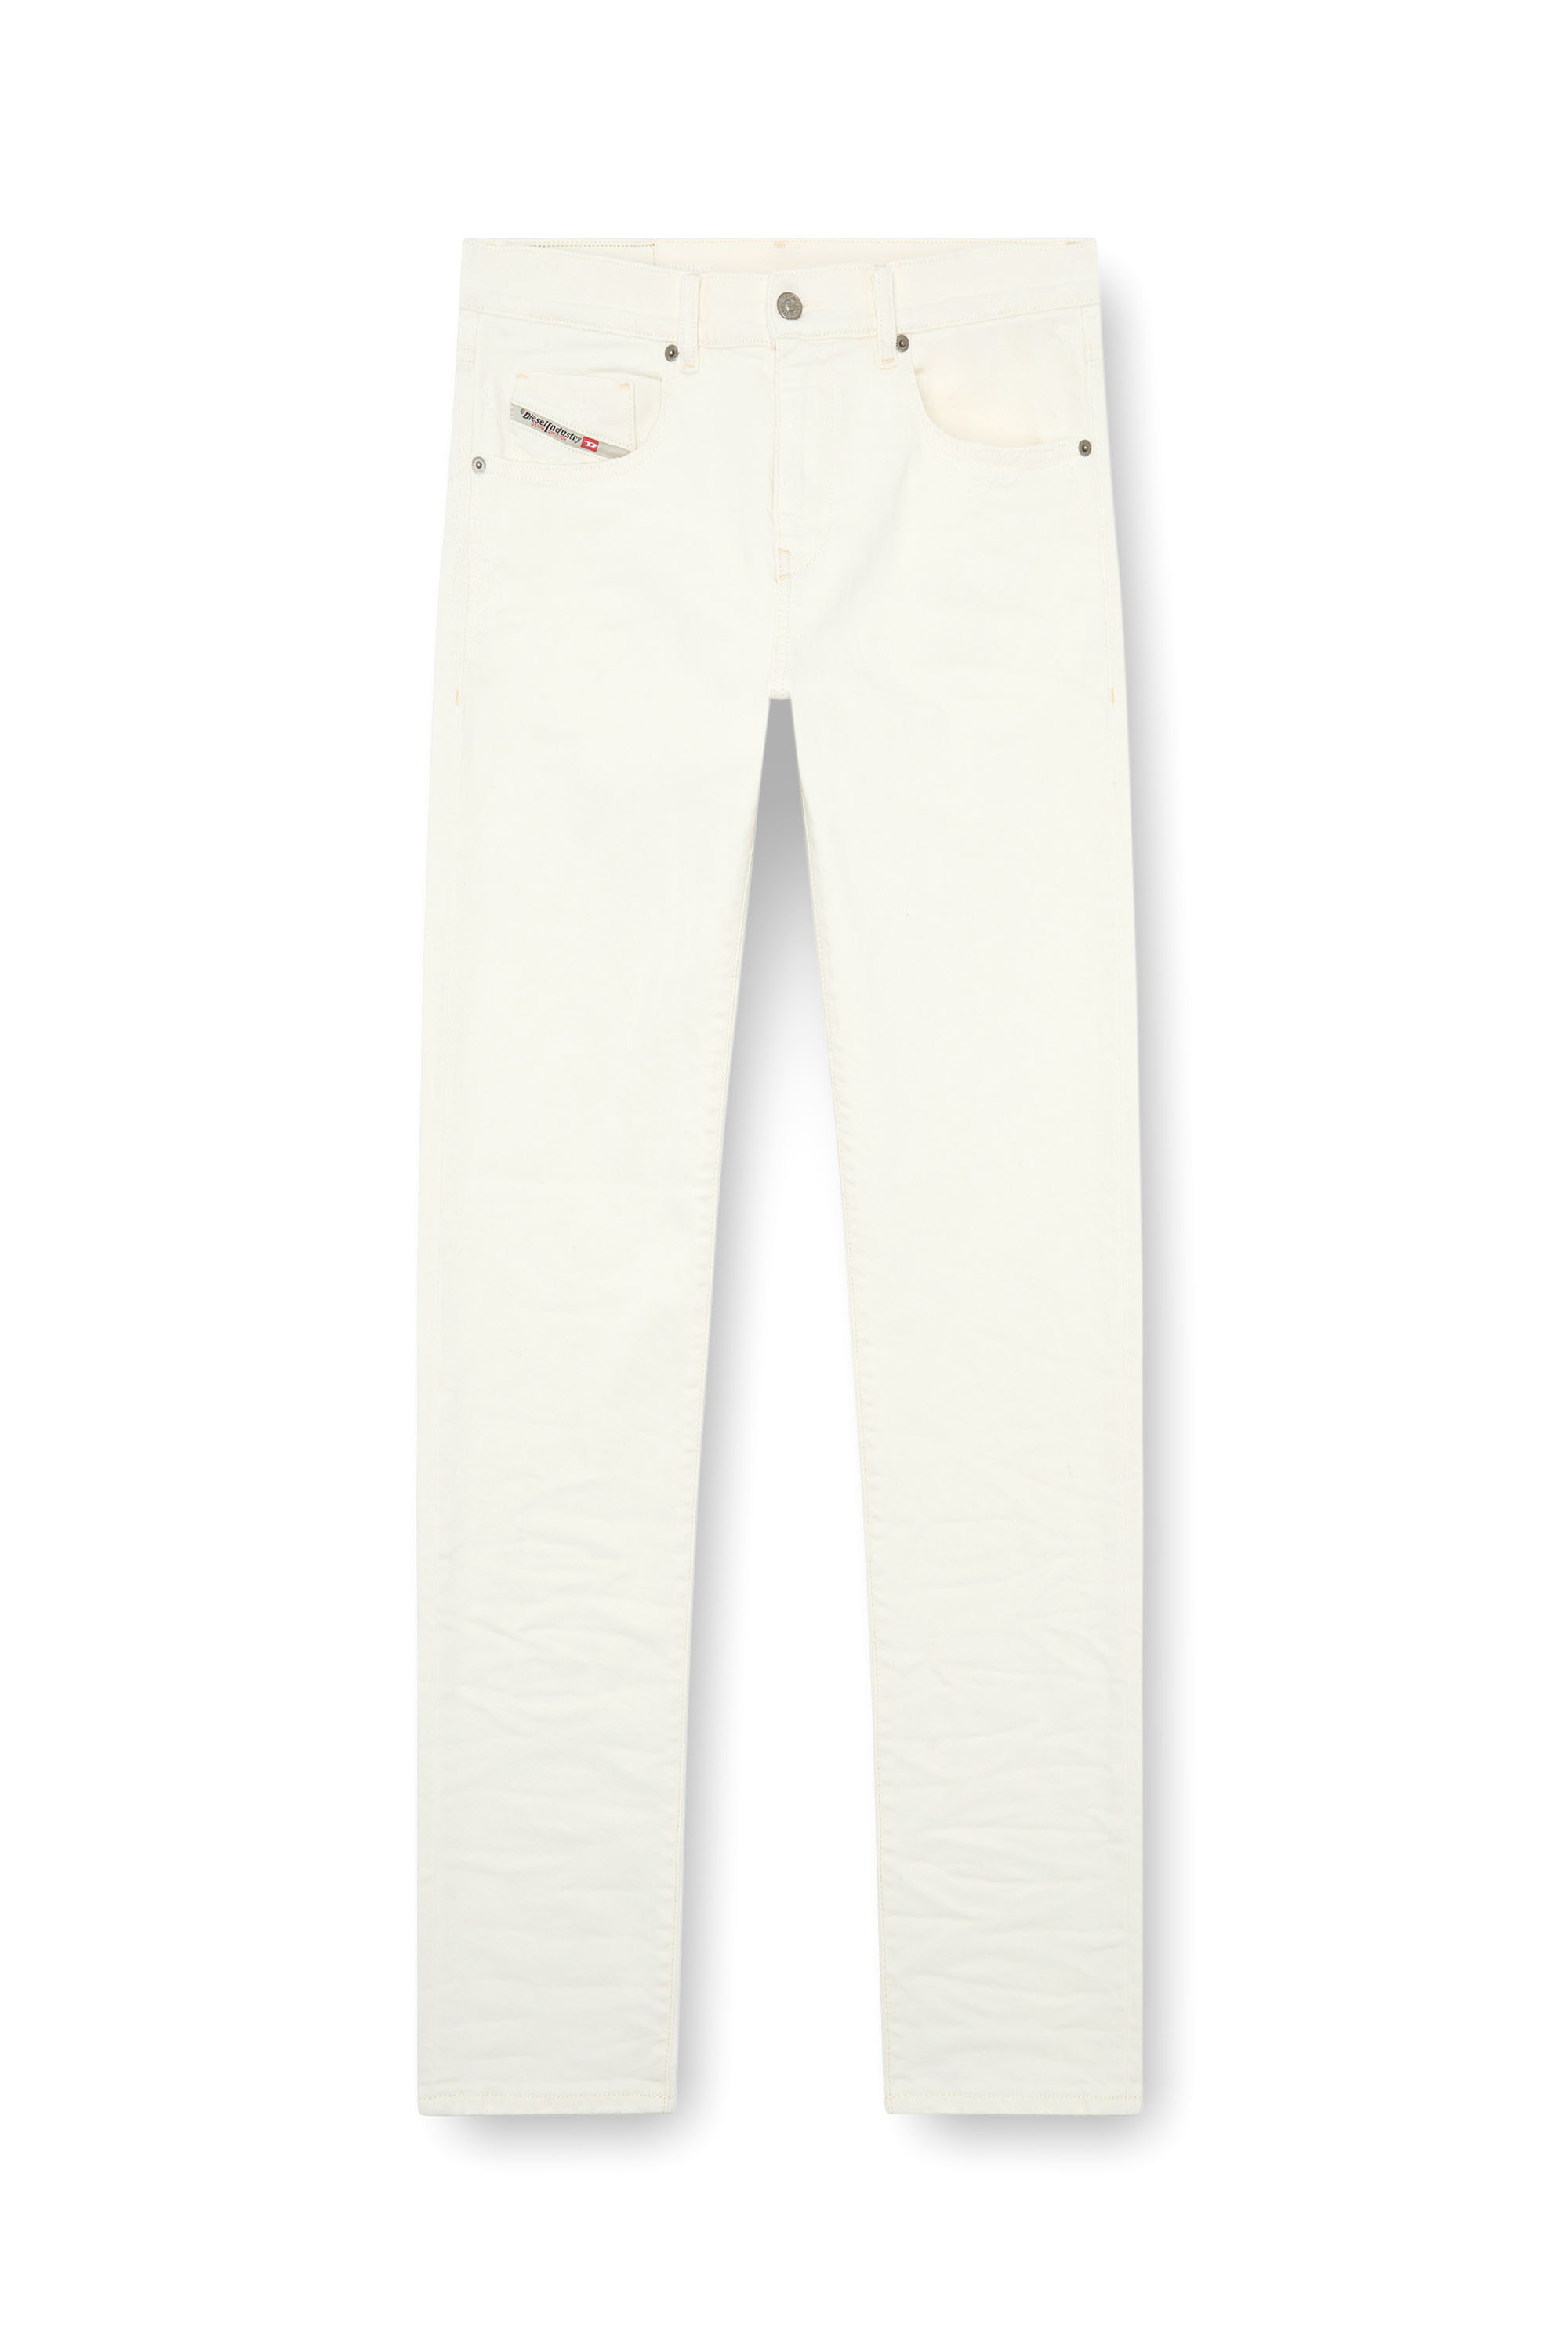 Diesel - Slim Jeans 2019 D-Strukt 09I15, Hombre Slim Jeans - 2019 D-Strukt in Blanco - Image 5